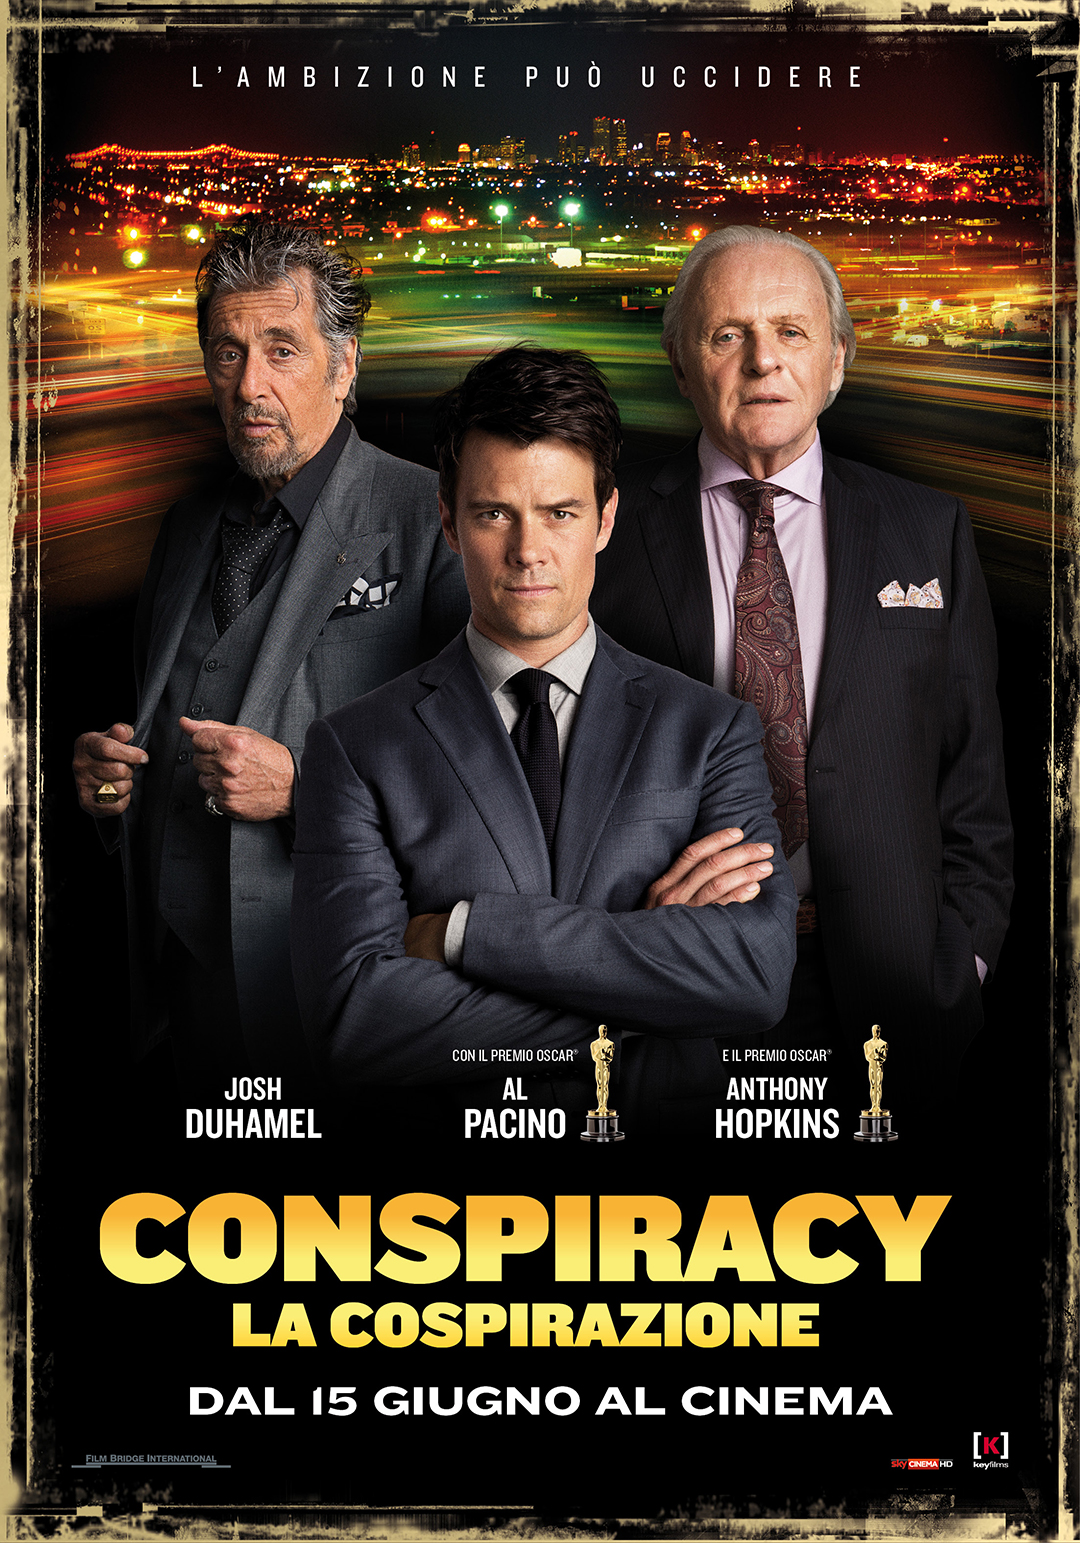 Conspiracy - La cospirazione